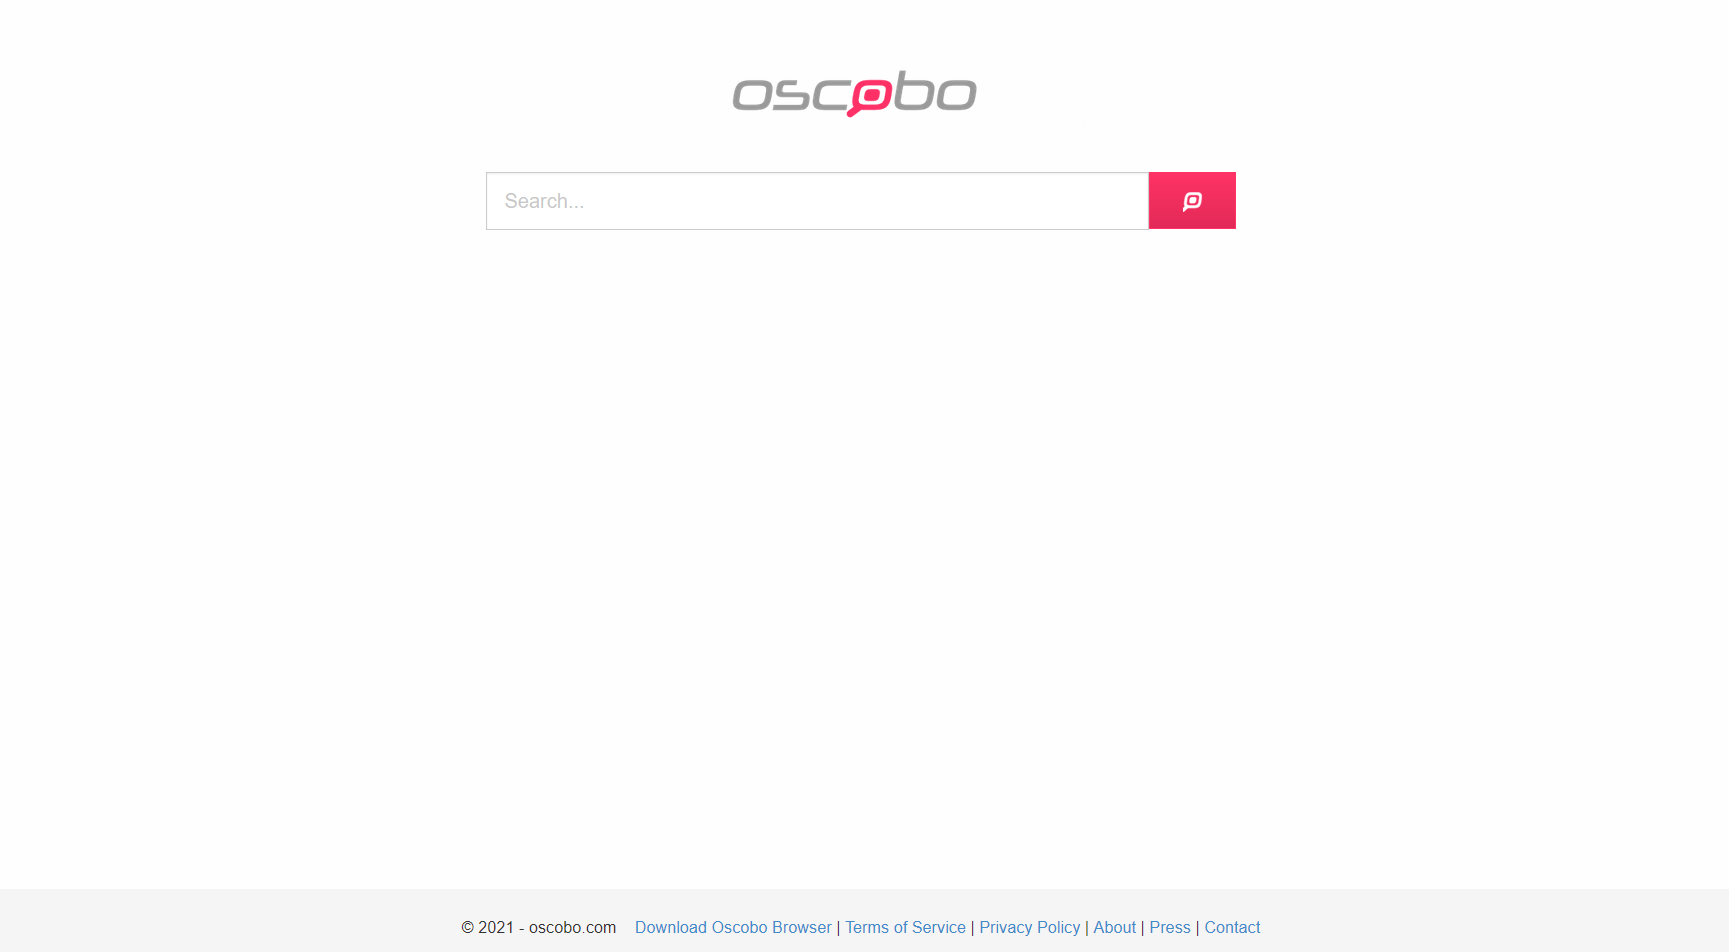 Startseite von Oscobo